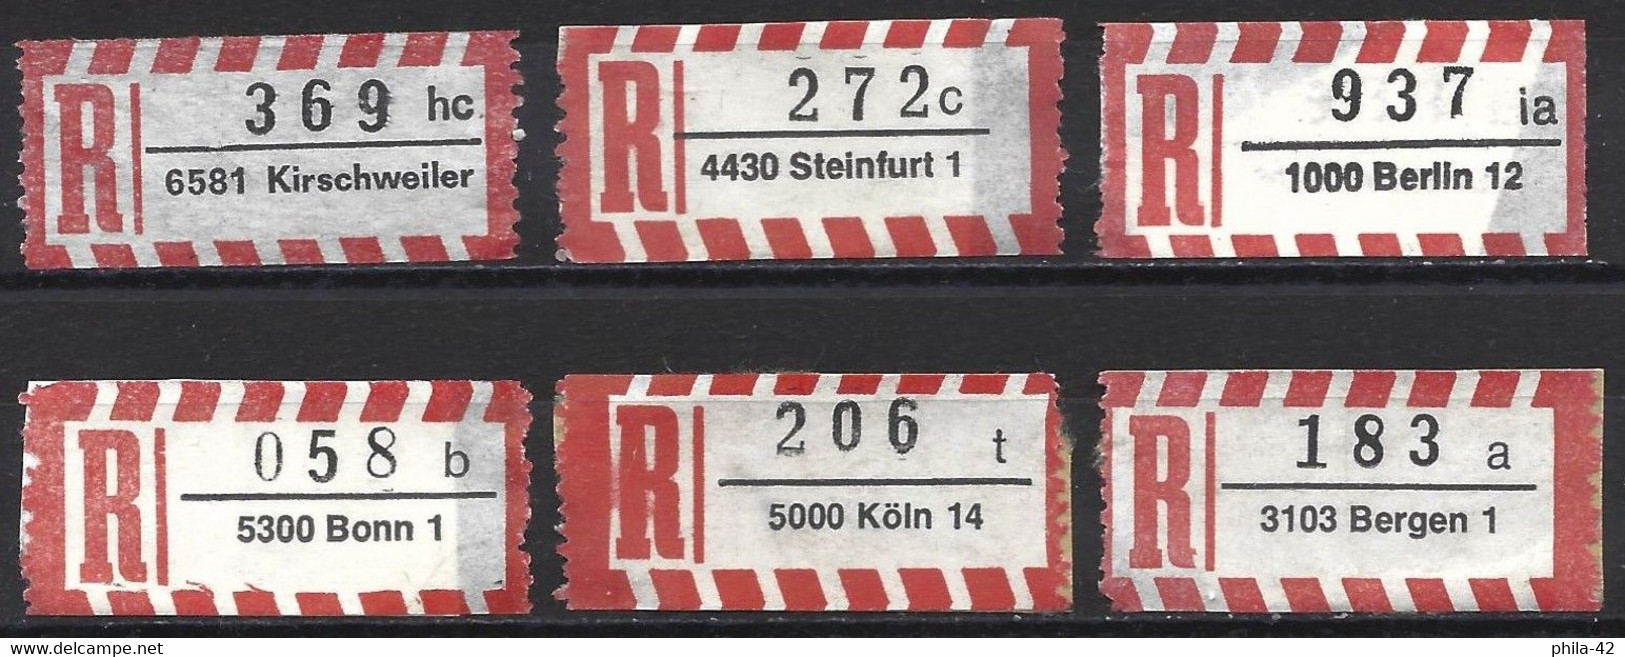 Germany FRG - Labels Registered Letter - Set 6 Labels - R- & V- Labels